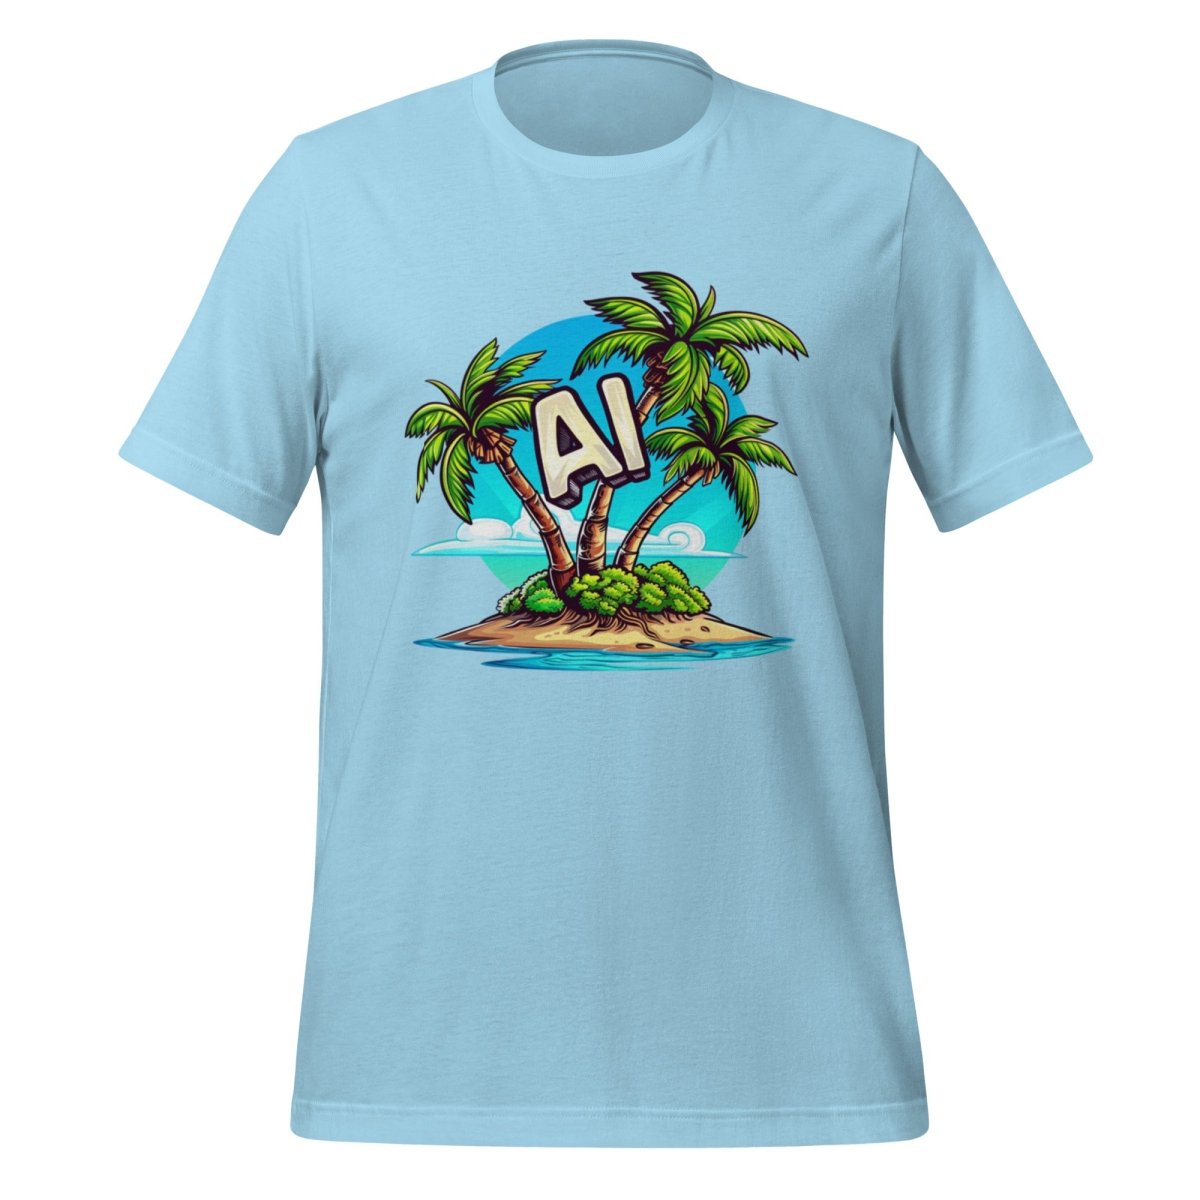 AI Palm Island T - Shirt 2 (unisex) - Ocean Blue - AI Store